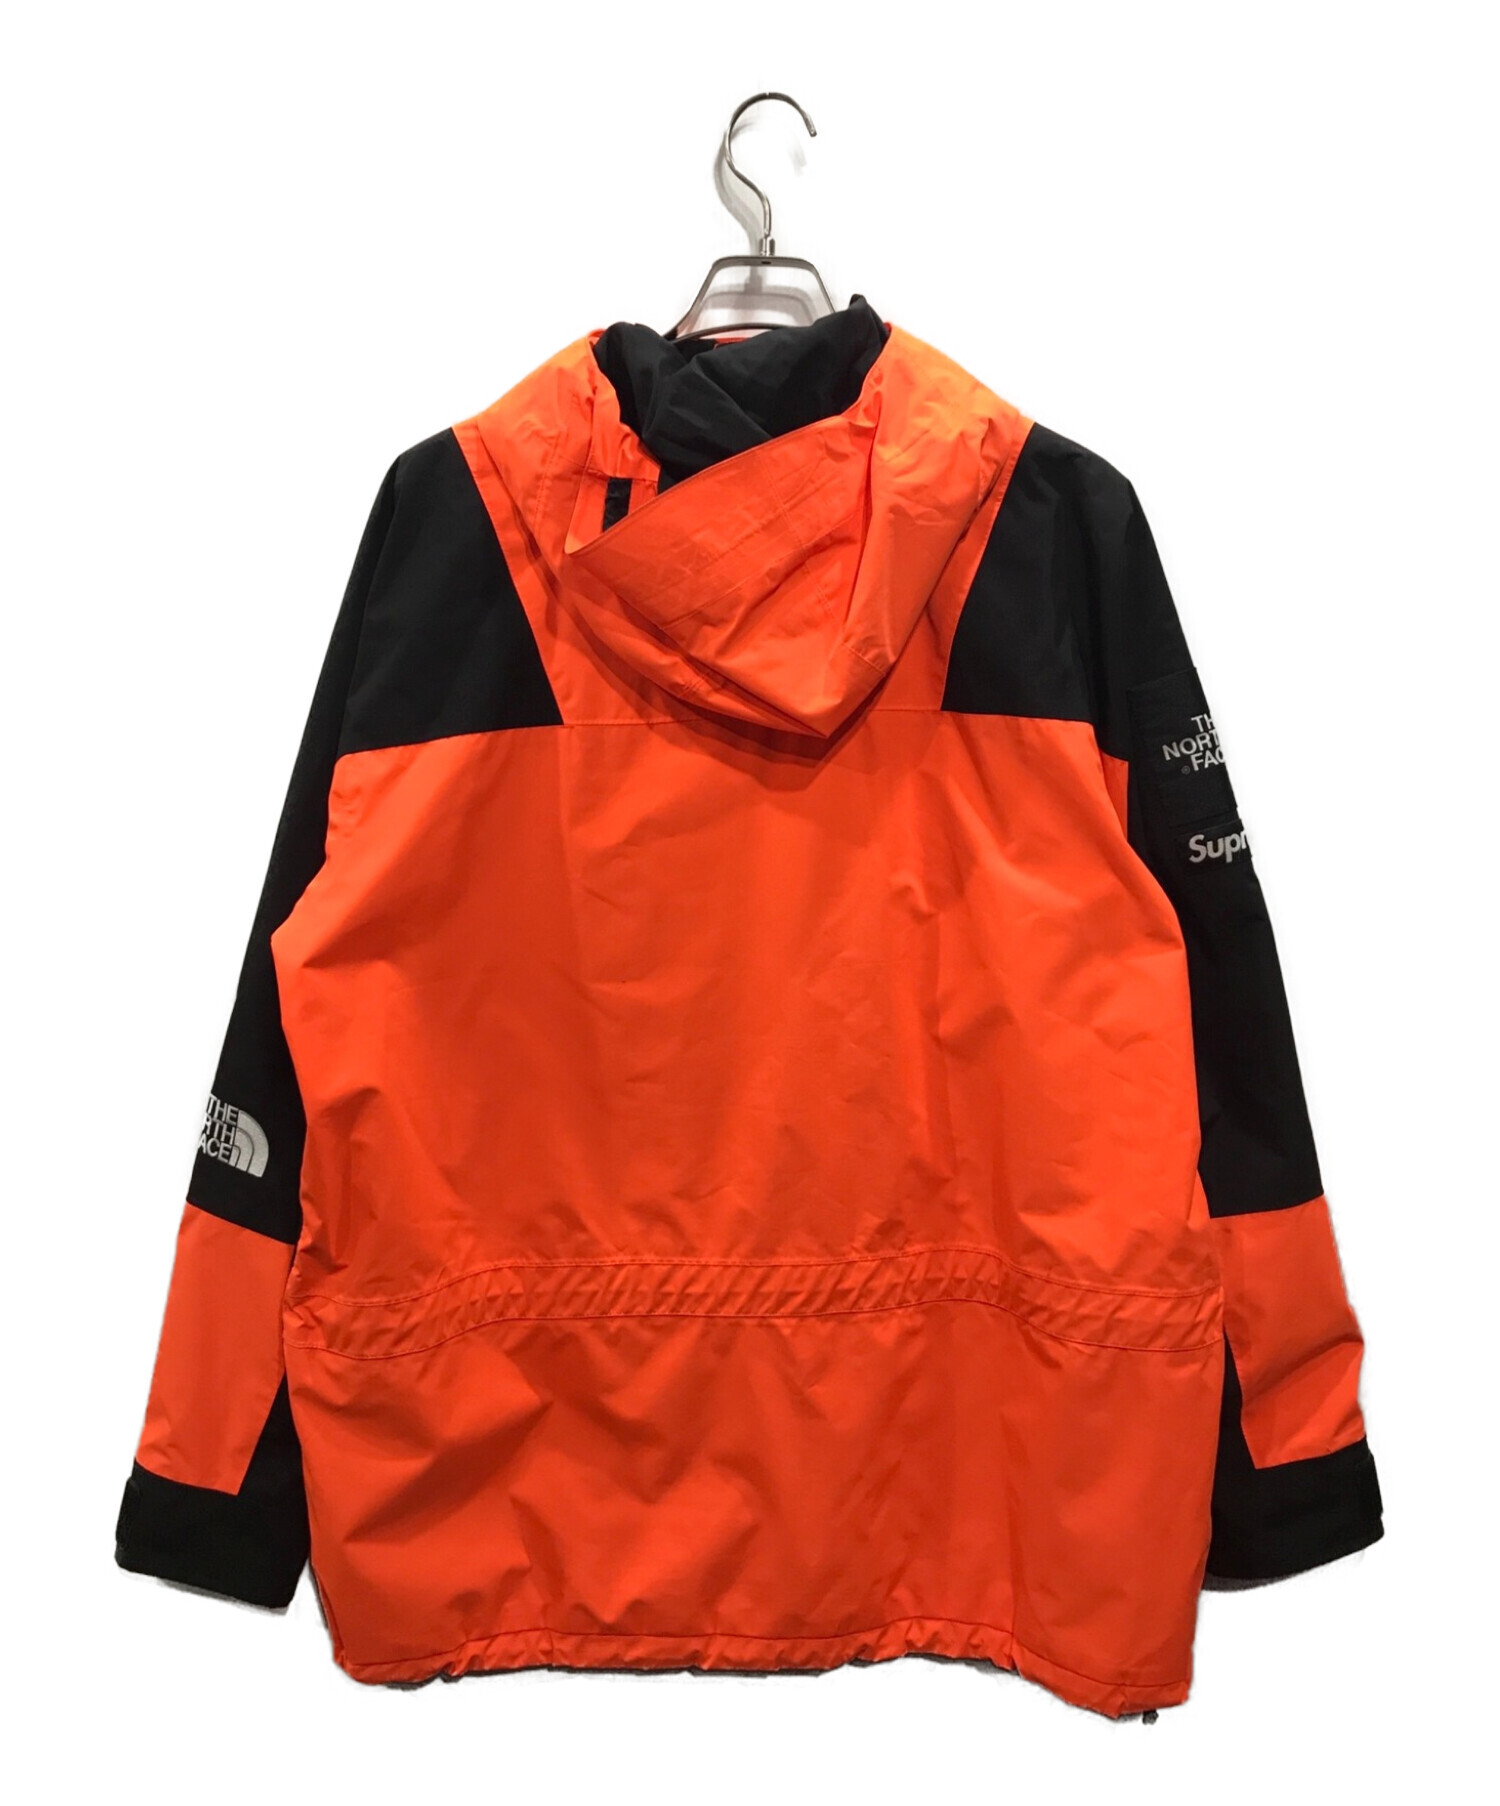 22,400円SUPREME North FACE 16AW Mountain Jacket